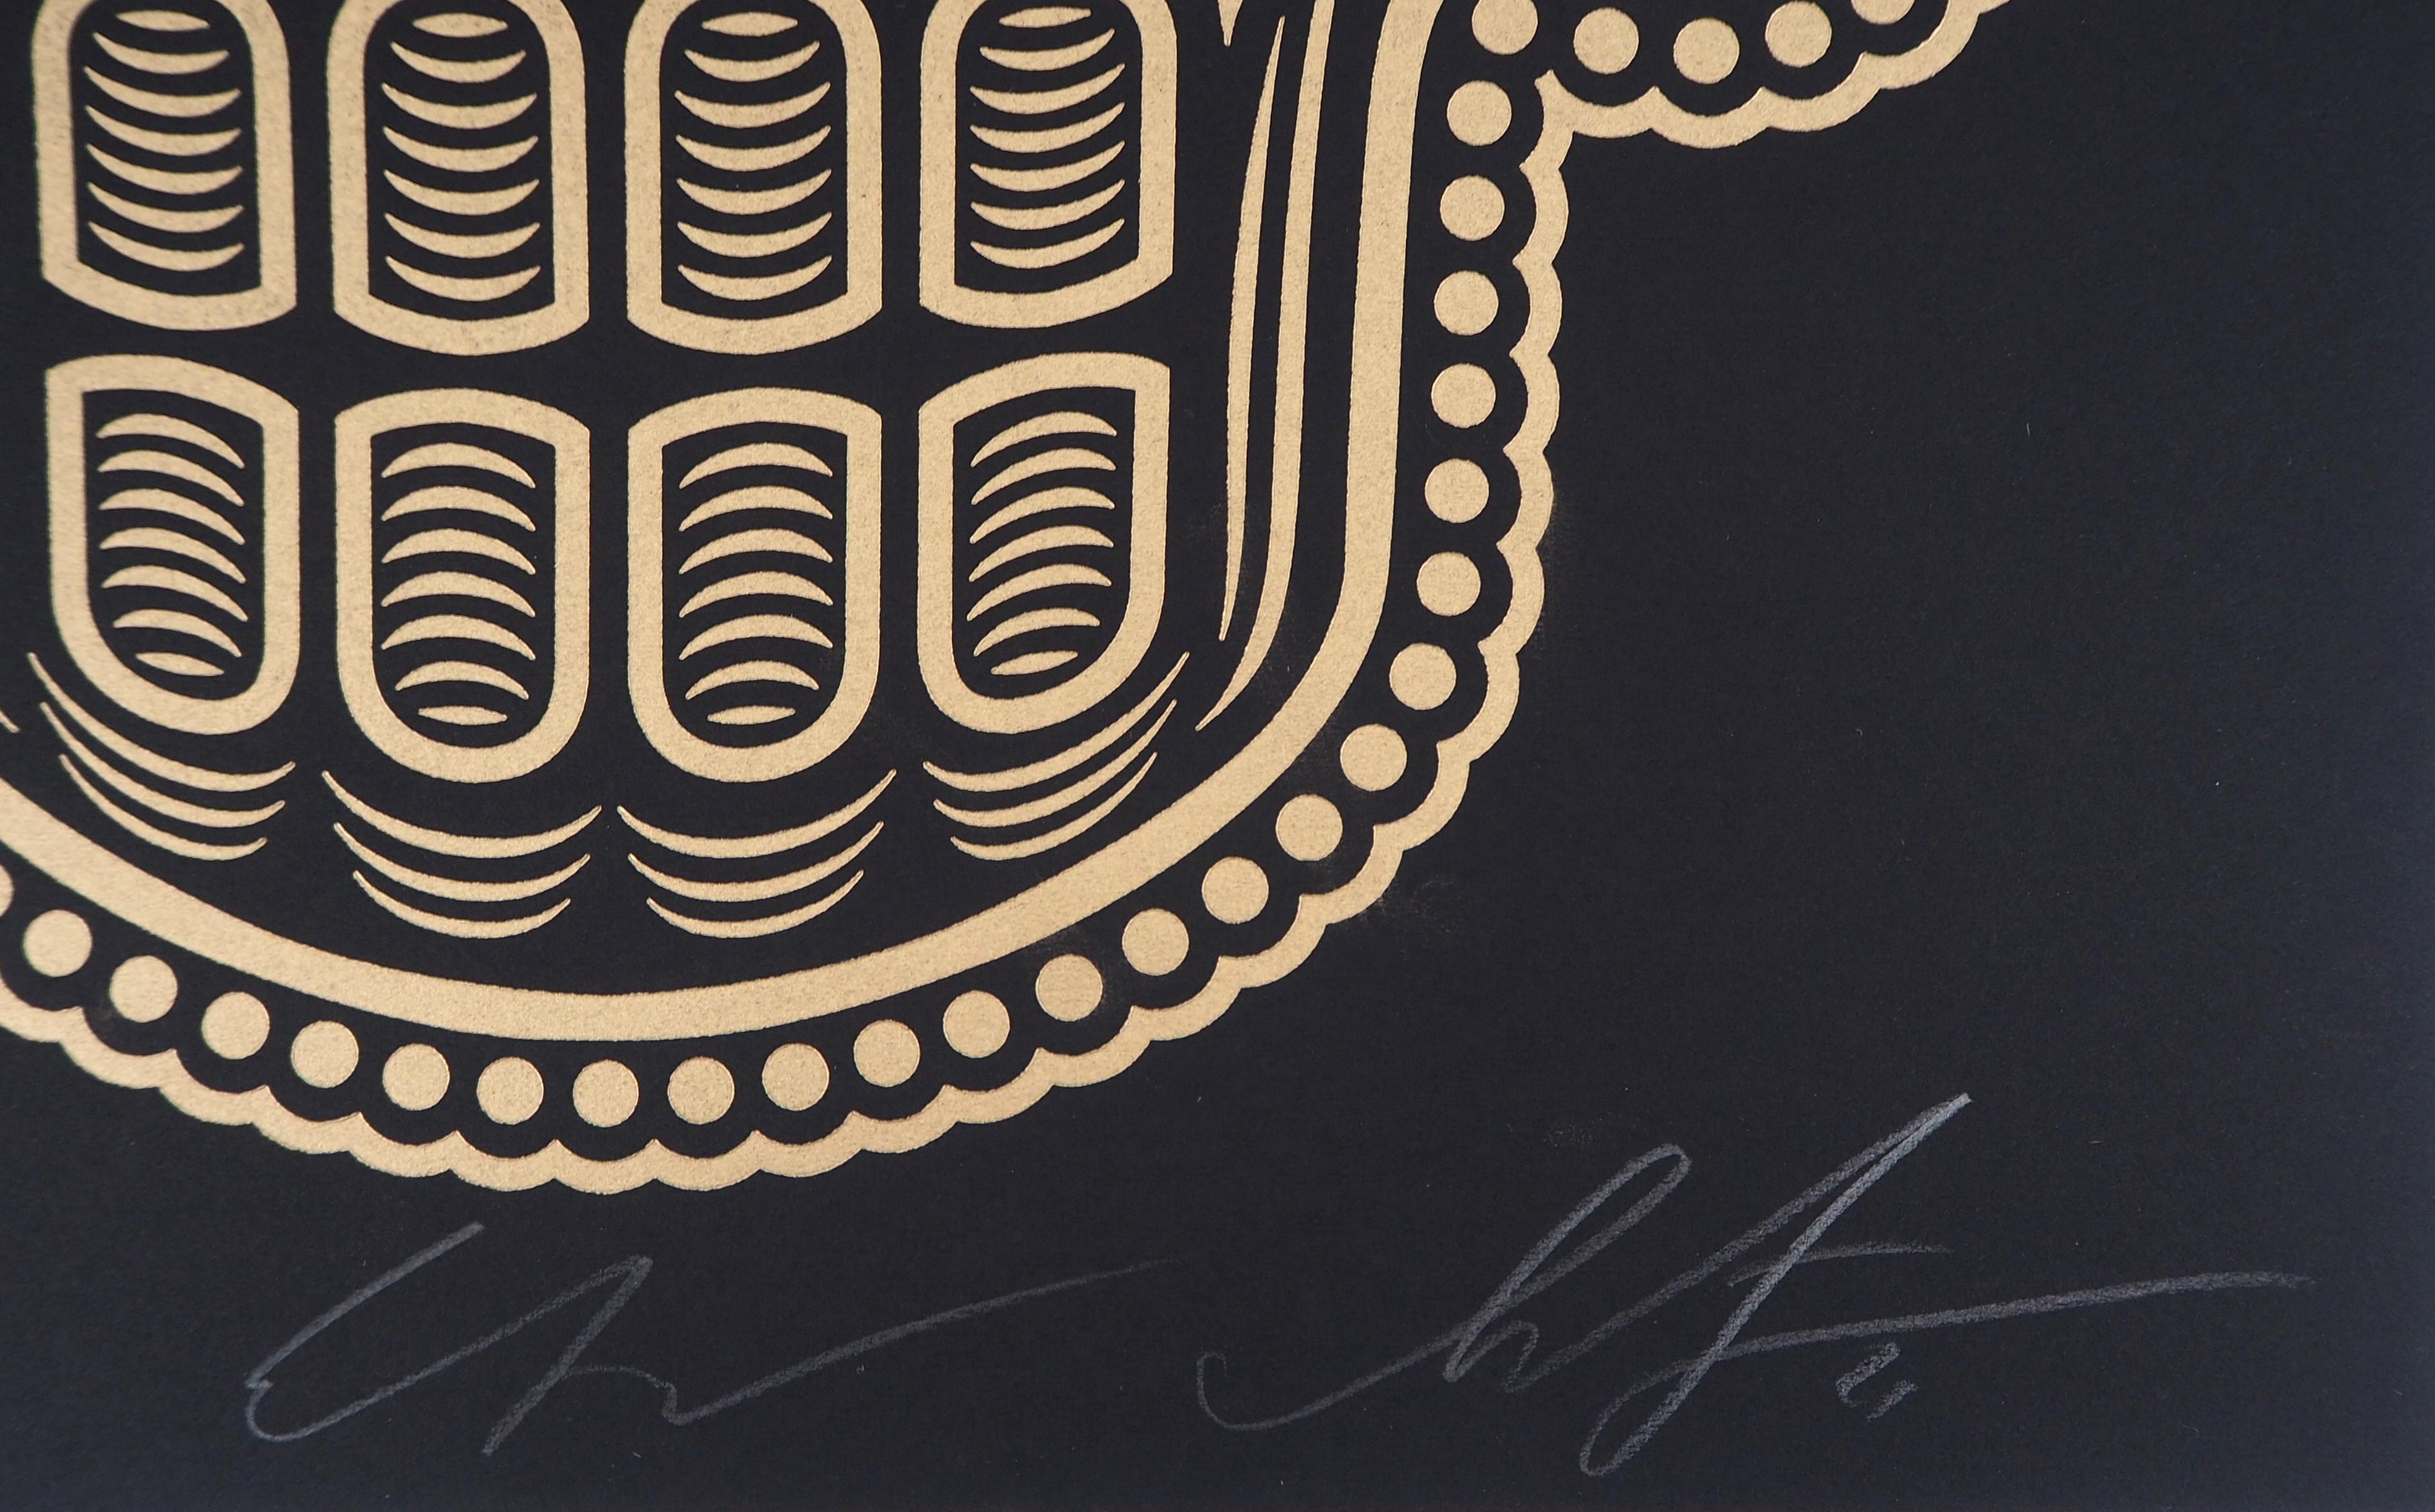 Shepard FAIREY (OBEY) und Ernesto YERENA (Ganas)
Dia de los Muertos / Tag der Toten

Zwei Original-Buchstaben (Serigraphie)
Handsigniert mit Bleistift
Nummeriert /250 Exemplare
Auf schwarzem Vellum 35 x 28 cm (ca. 18 x 11 inch)

Ausgezeichneter